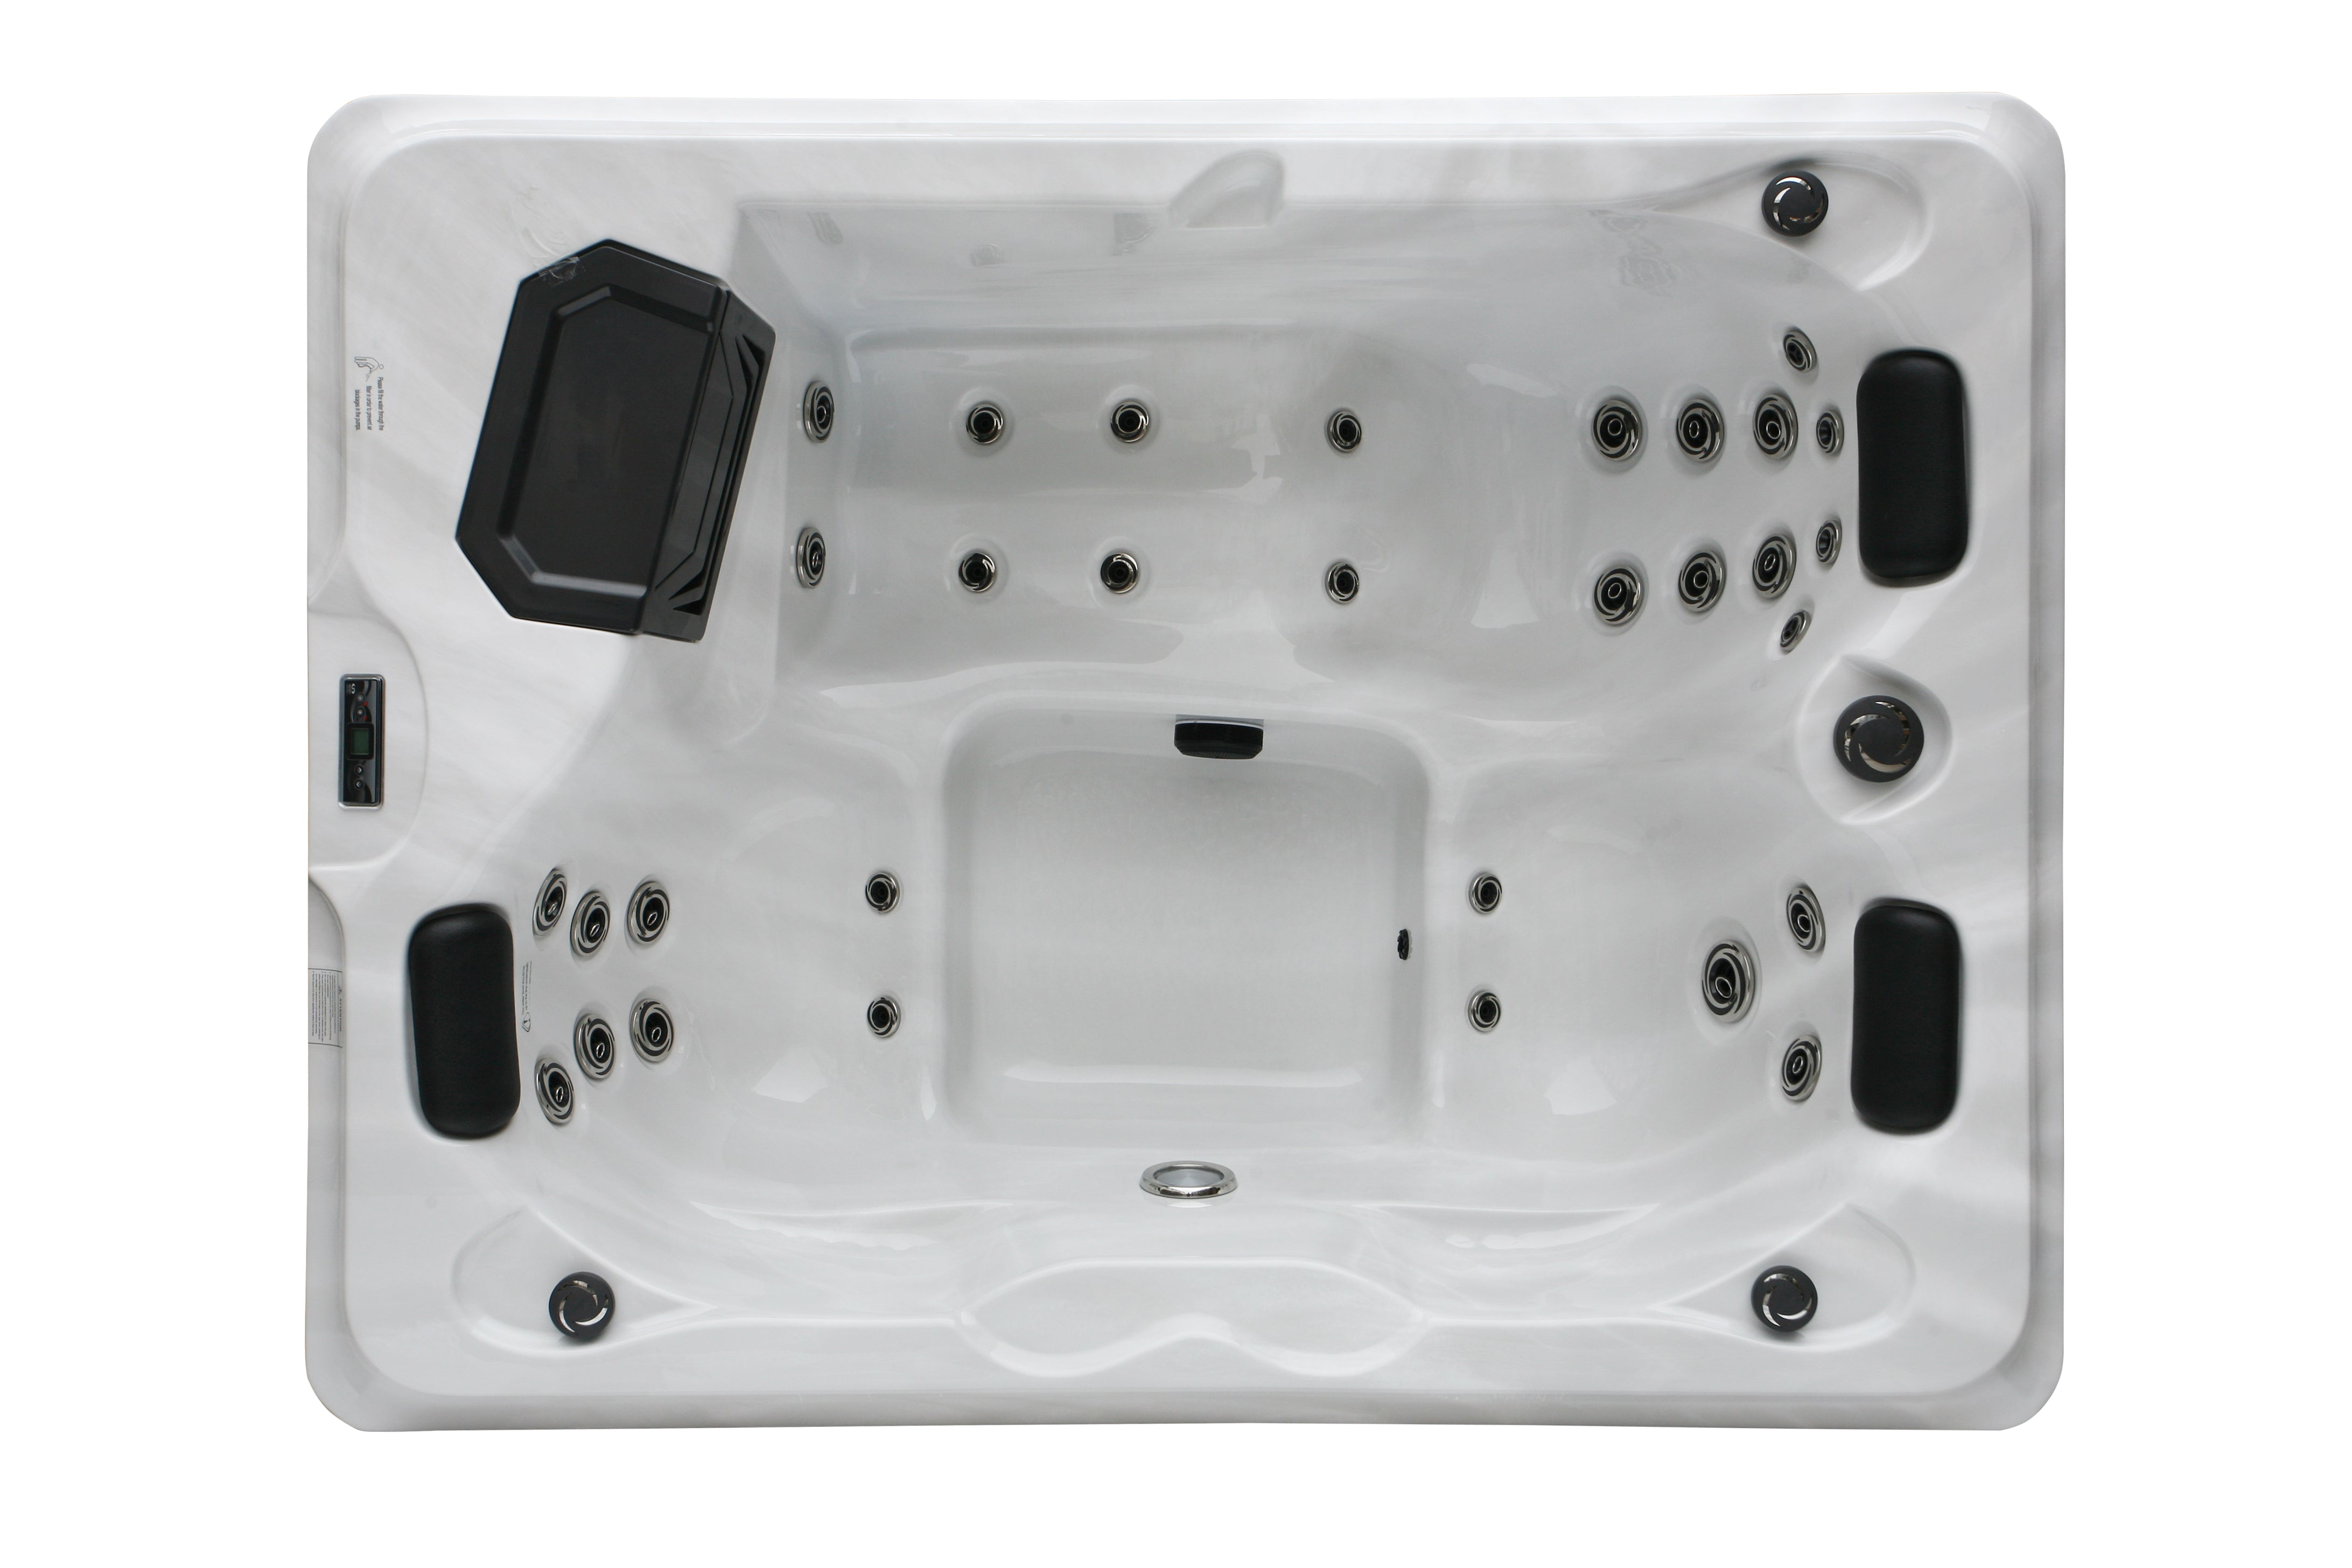 Sanotechnik Outdoor Whirlpool FIJI - Sterling Silver - Ansicht von oben - 31 Massagedüsen für 3 Personen, Bluetooth Audiosystem, LED Beleuchtung, WiFi Fernbedienung